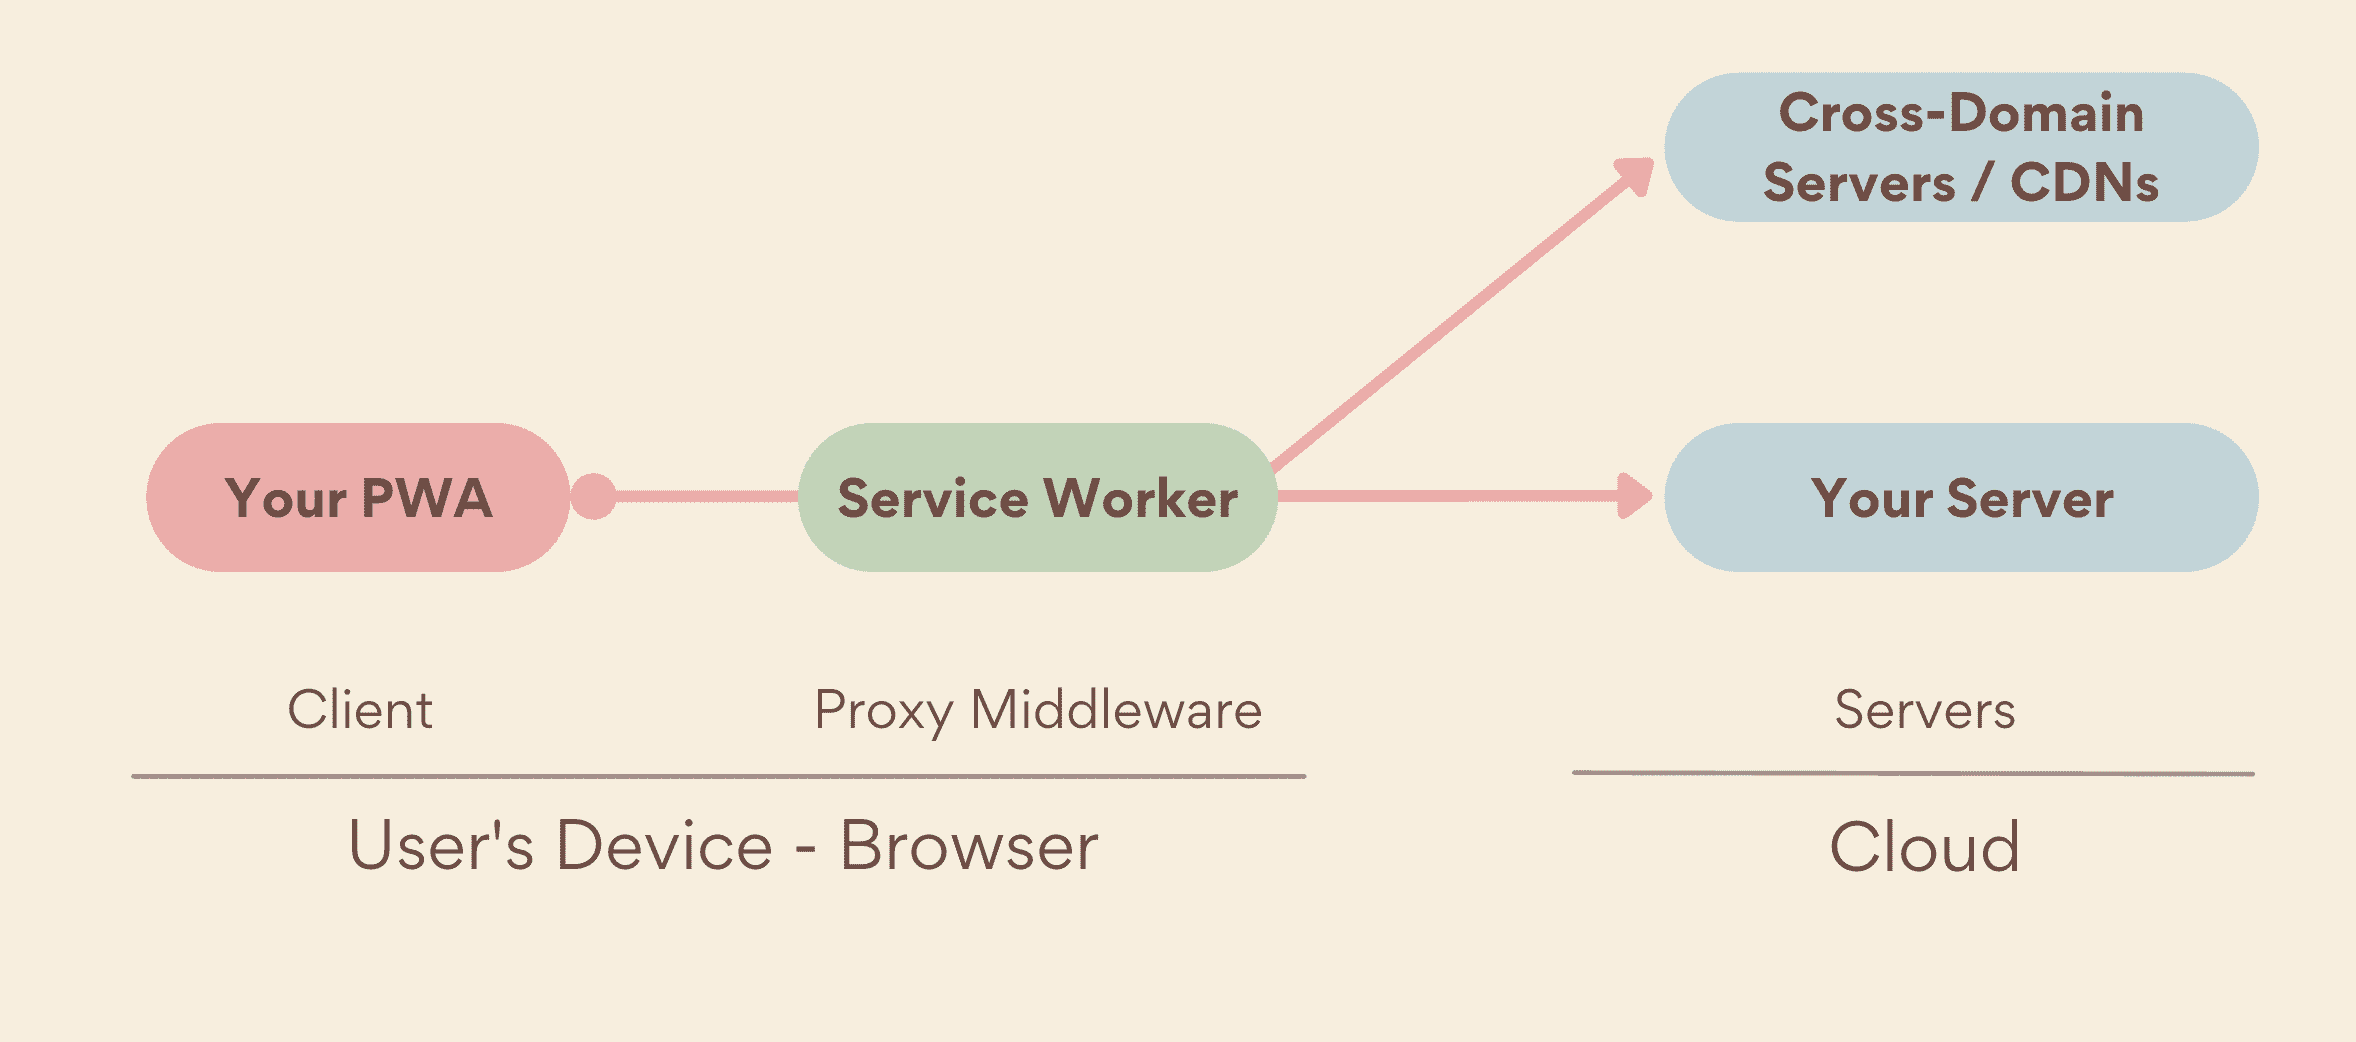 โปรแกรมทำงานของบริการเป็นพร็อกซีมิดเดิลแวร์ที่เรียกใช้ด้านอุปกรณ์ระหว่าง PWA กับเซิร์ฟเวอร์ของคุณ ซึ่งรวมทั้งเซิร์ฟเวอร์ของคุณเองและเซิร์ฟเวอร์แบบข้ามโดเมน